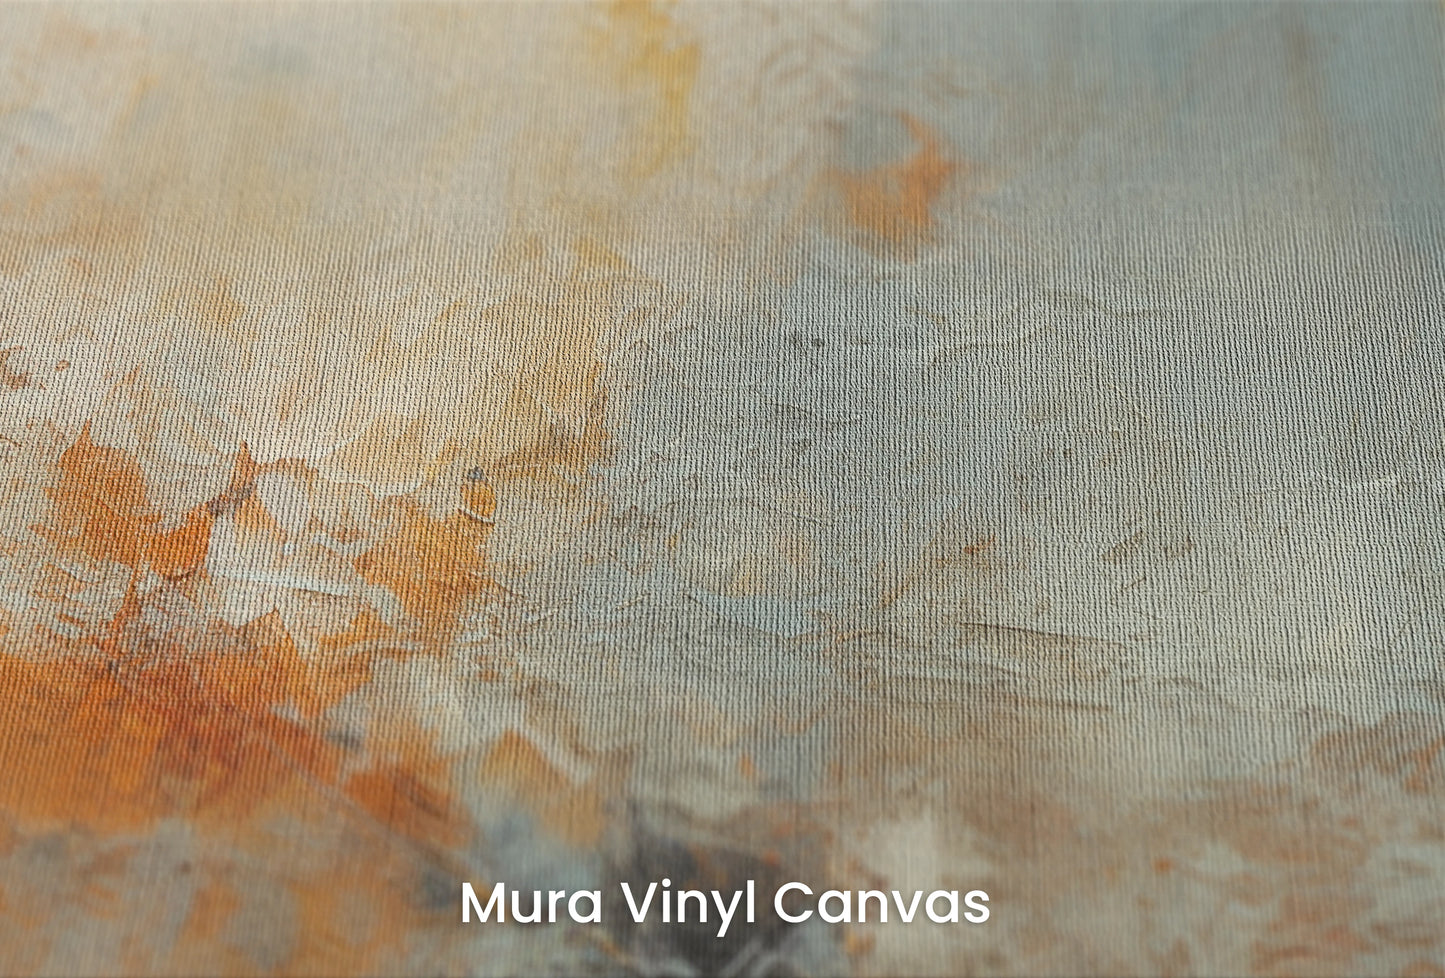 Zbliżenie na artystyczną fototapetę o nazwie Moon's Texture na podłożu Mura Vinyl Canvas - faktura naturalnego płótna.